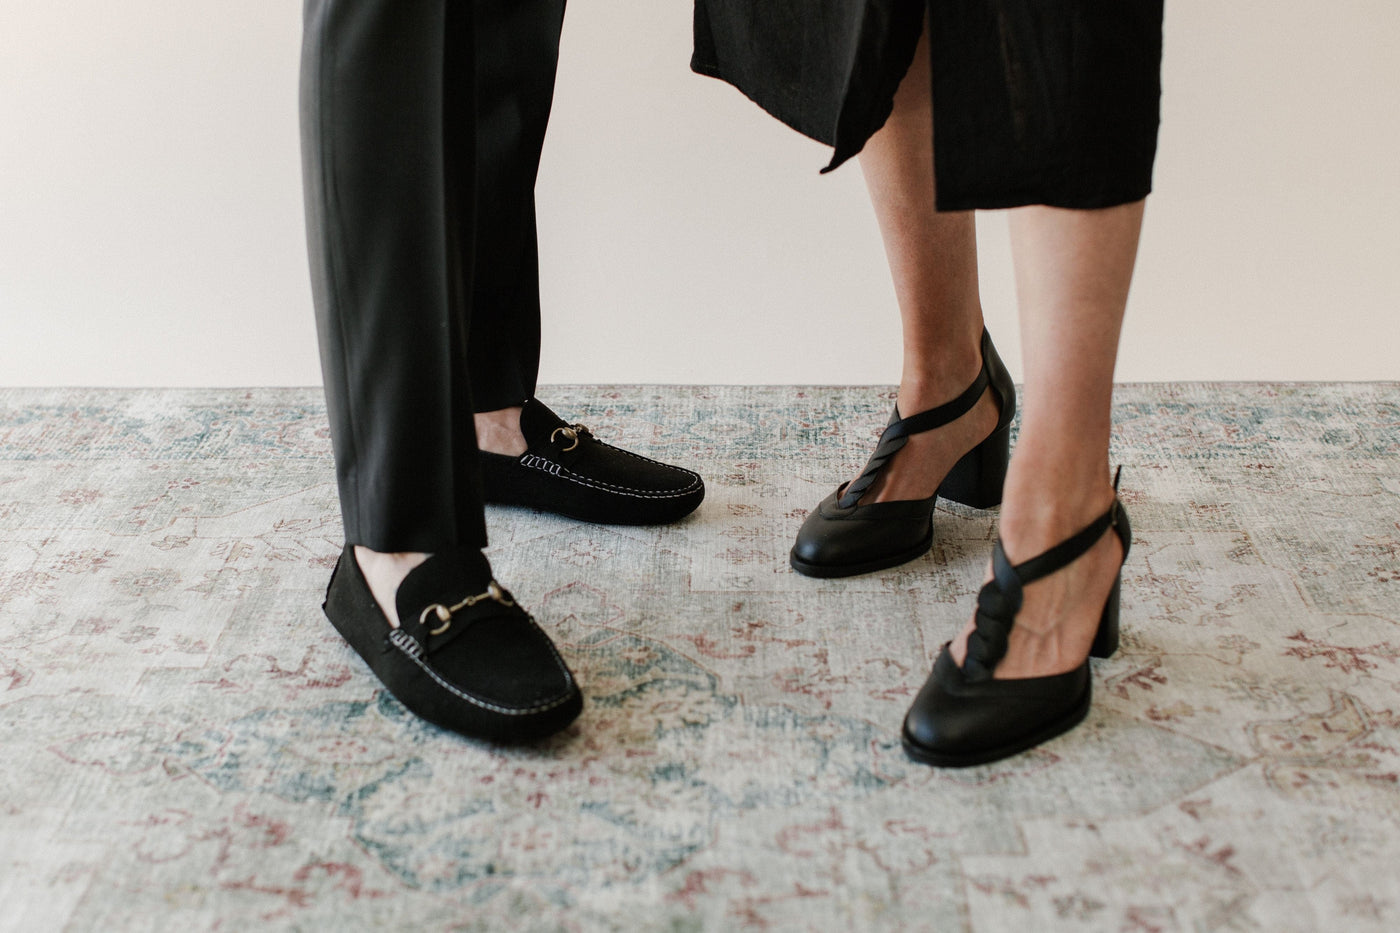 'Lauren' women's black t-bar mid-heel by Zette Shoes